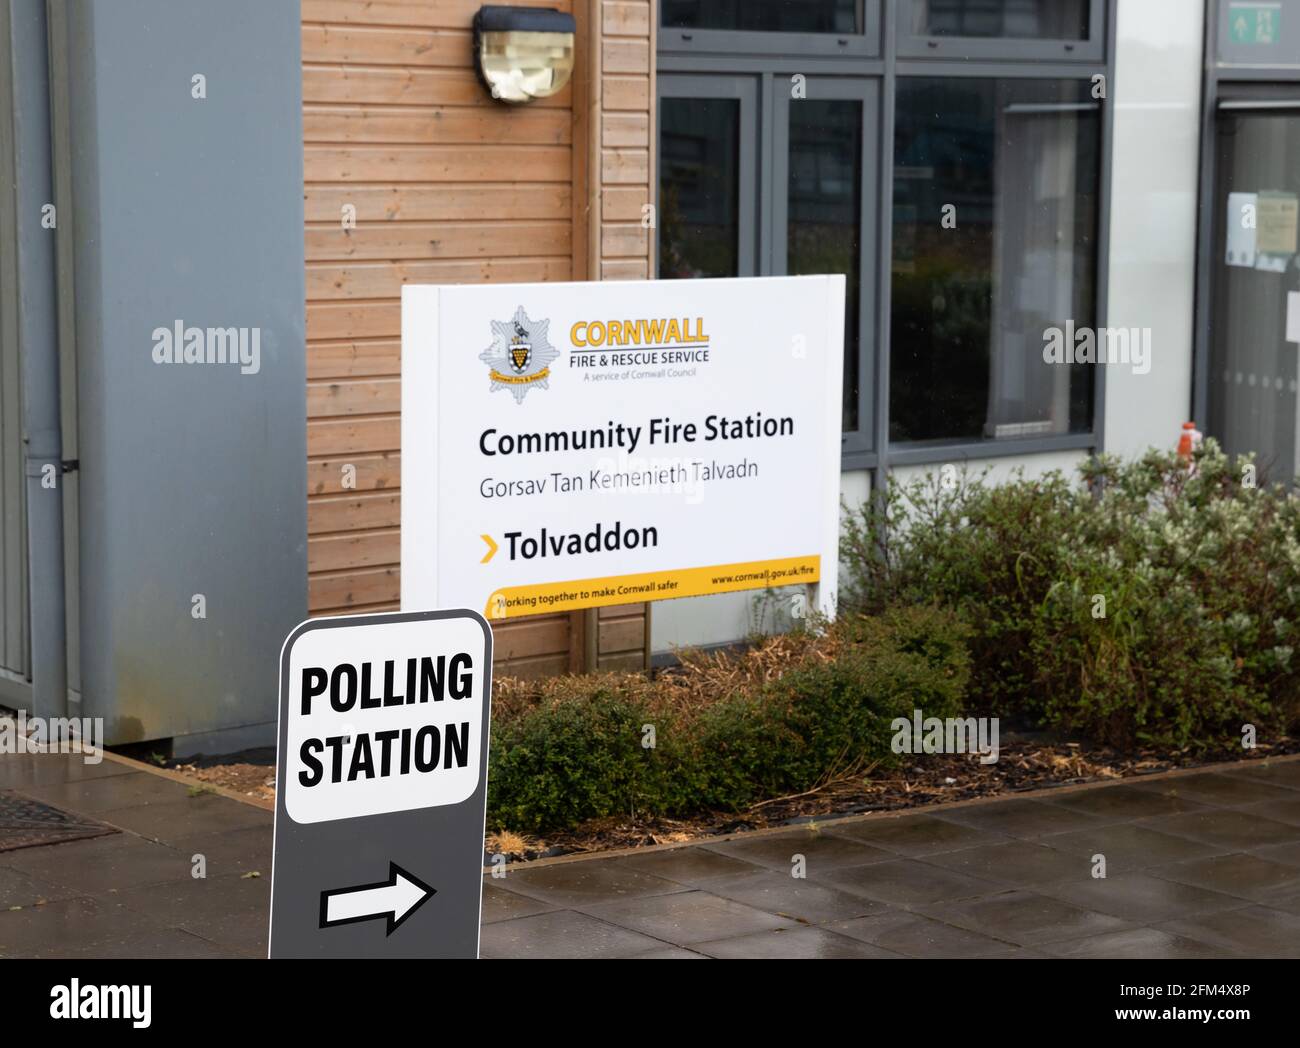 Tolvaddon, Cornwall,6. Mai 2021, die Ratswahlen in Cornwall fanden heute in der Gemeindefeuerwache von Cornwall statt, die Polling-Station ist von 7:00 bis 22:00 Uhr geöffnet, bevor die Wahlkarten zur Zählung weggenommen werden. Kredit: Keith Larby/Alamy Live Nachrichten Stockfoto